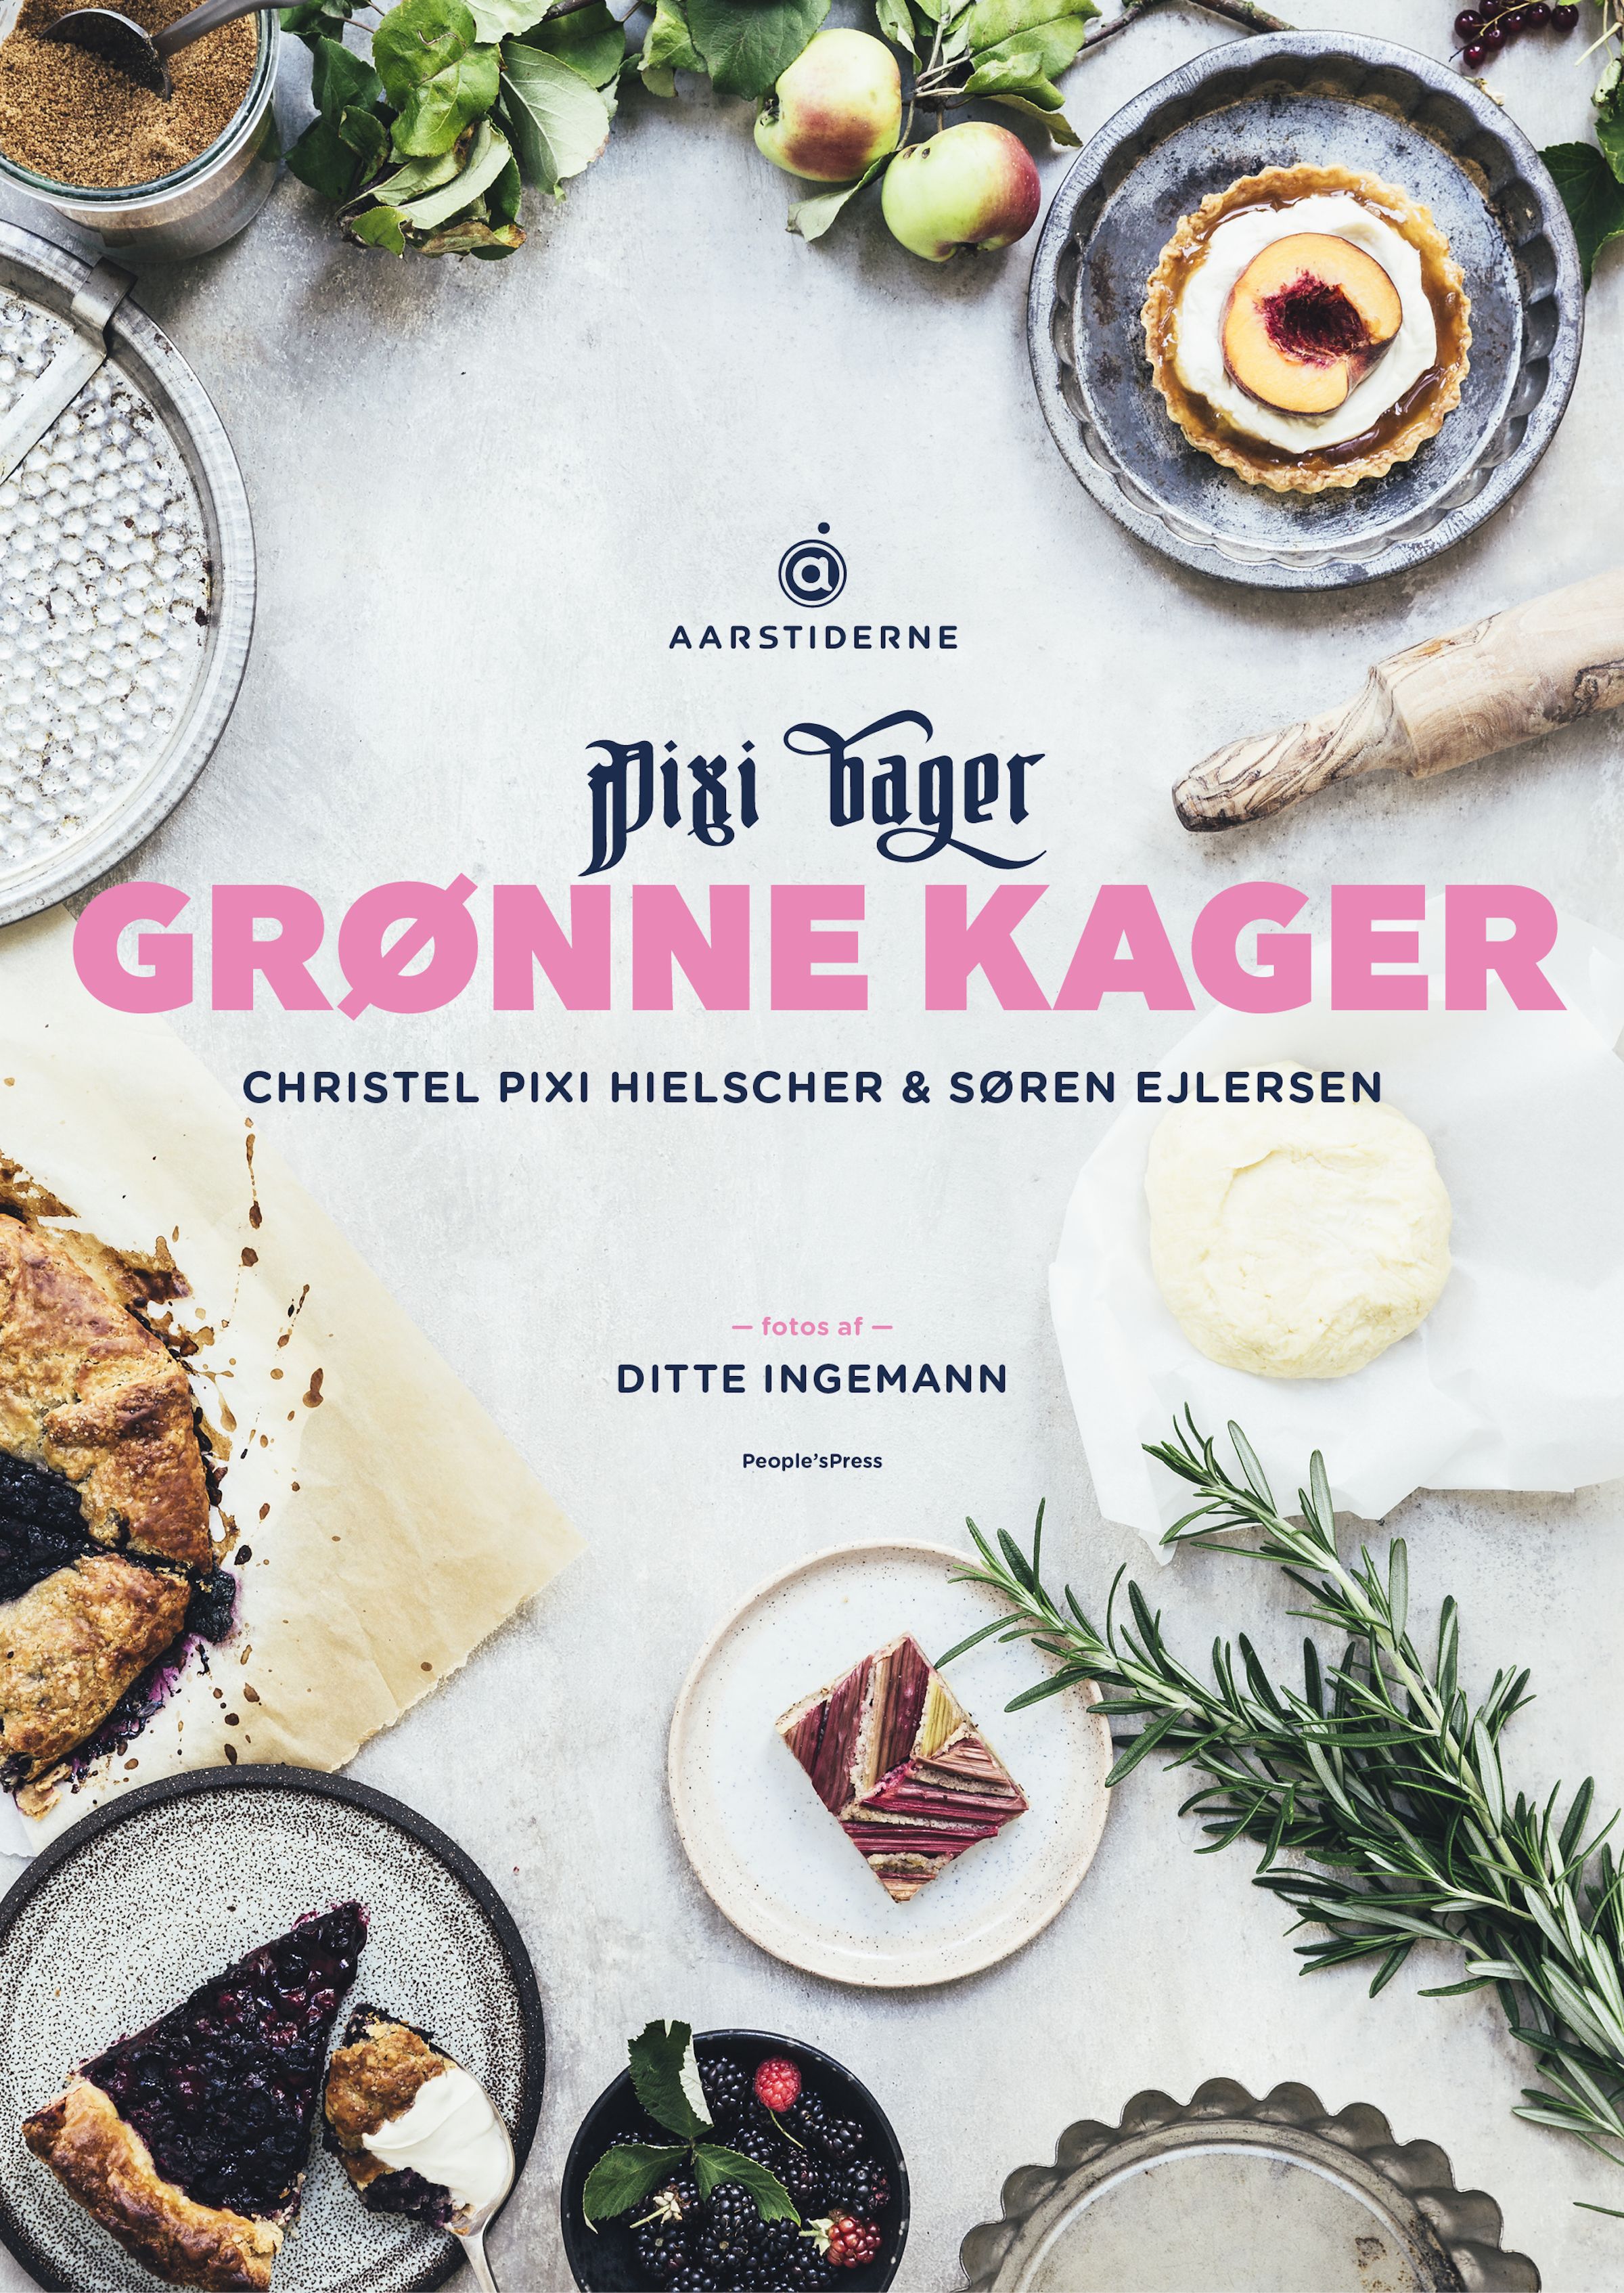 Grønne kager, e-bog af Søren Ejlersen, Christel Pixi Hielscher